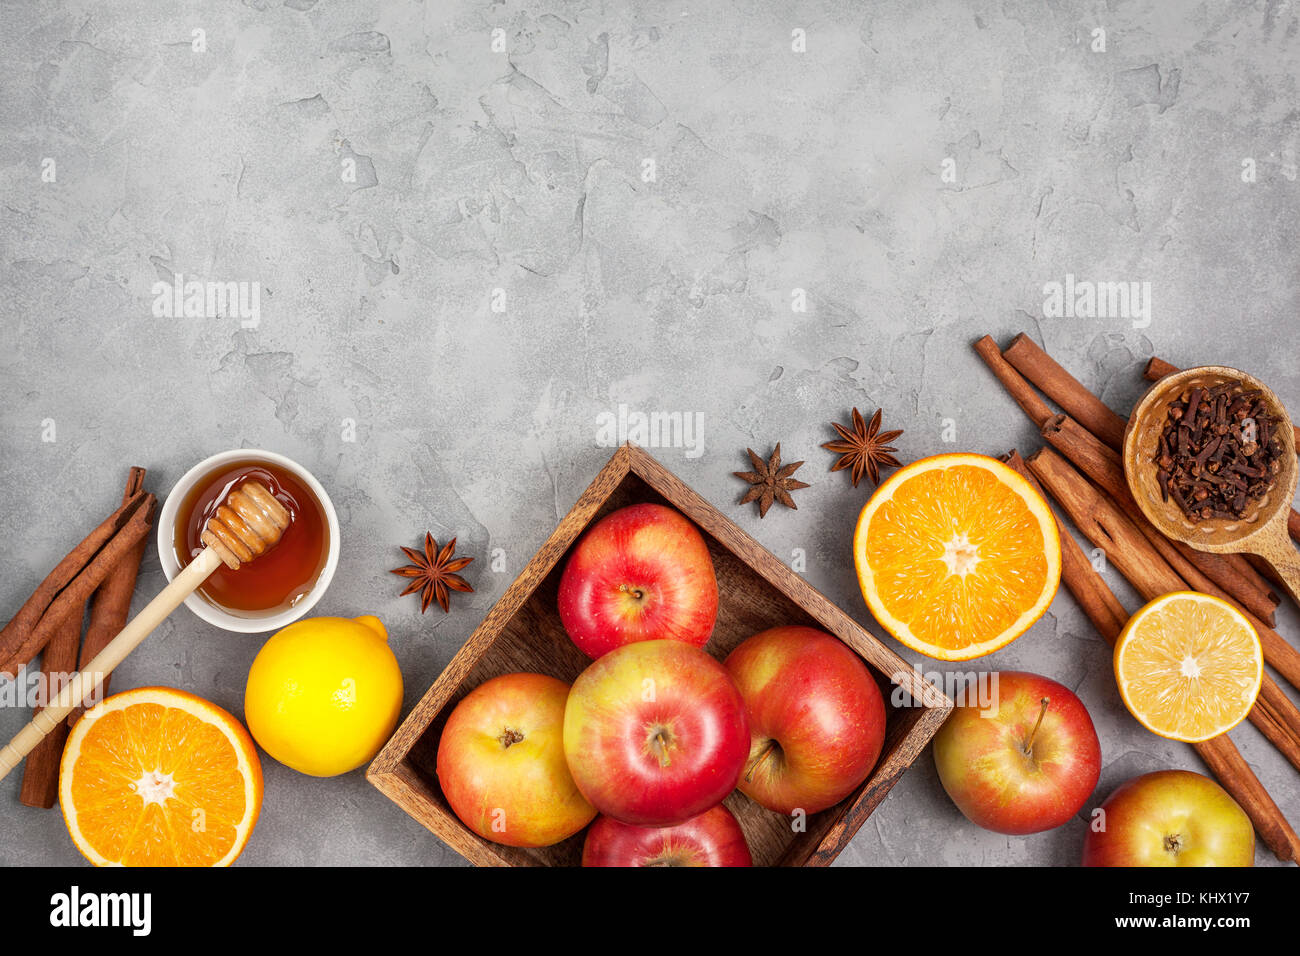 Ingrédients pour boissons d'hiver (vin chaud, punch, thé) : pommes, oranges, citrons et d'épices sur un fond de béton gris. Vue de dessus. copy space Banque D'Images